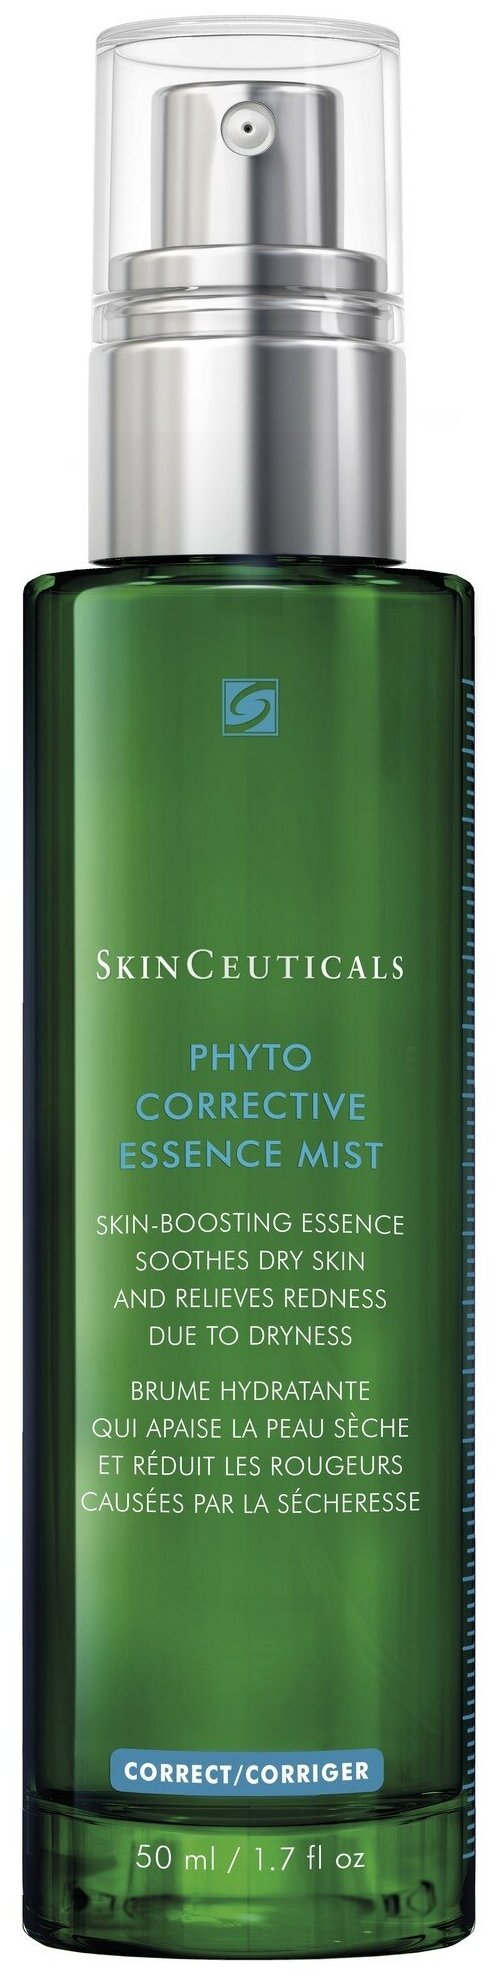 Увлажняющий успокаивающий спрей для лица Skinceuticals Phyto Corrective Essence Mist с растительными экстрактами, 50 мл